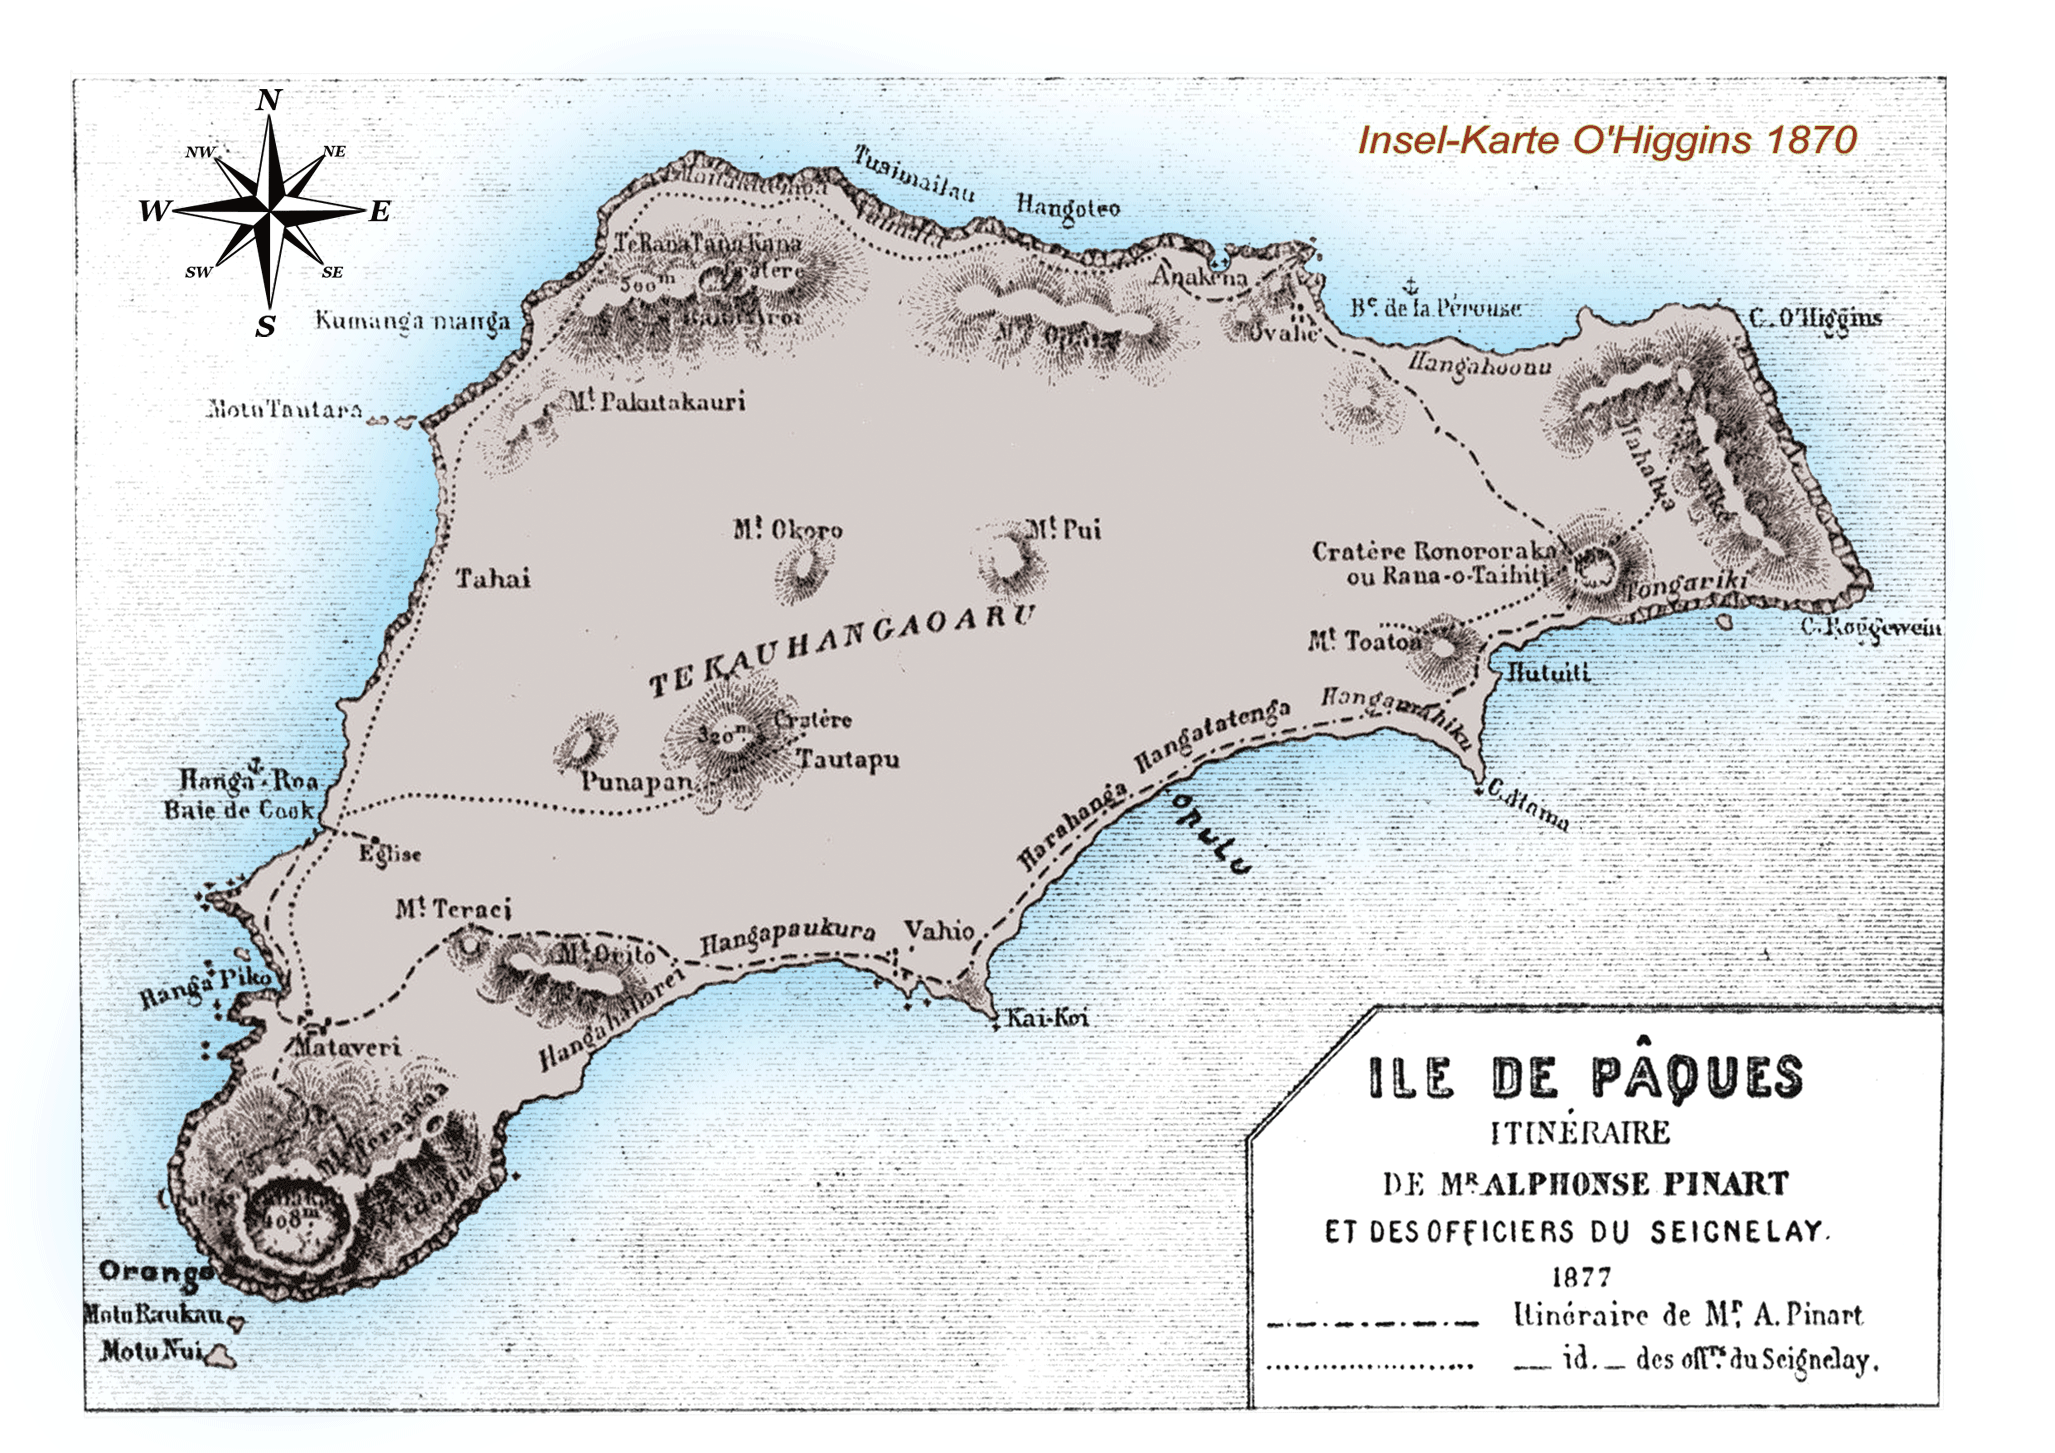 Karte von der Osterinsel aus dem Jahre 1870 von O'Higgins